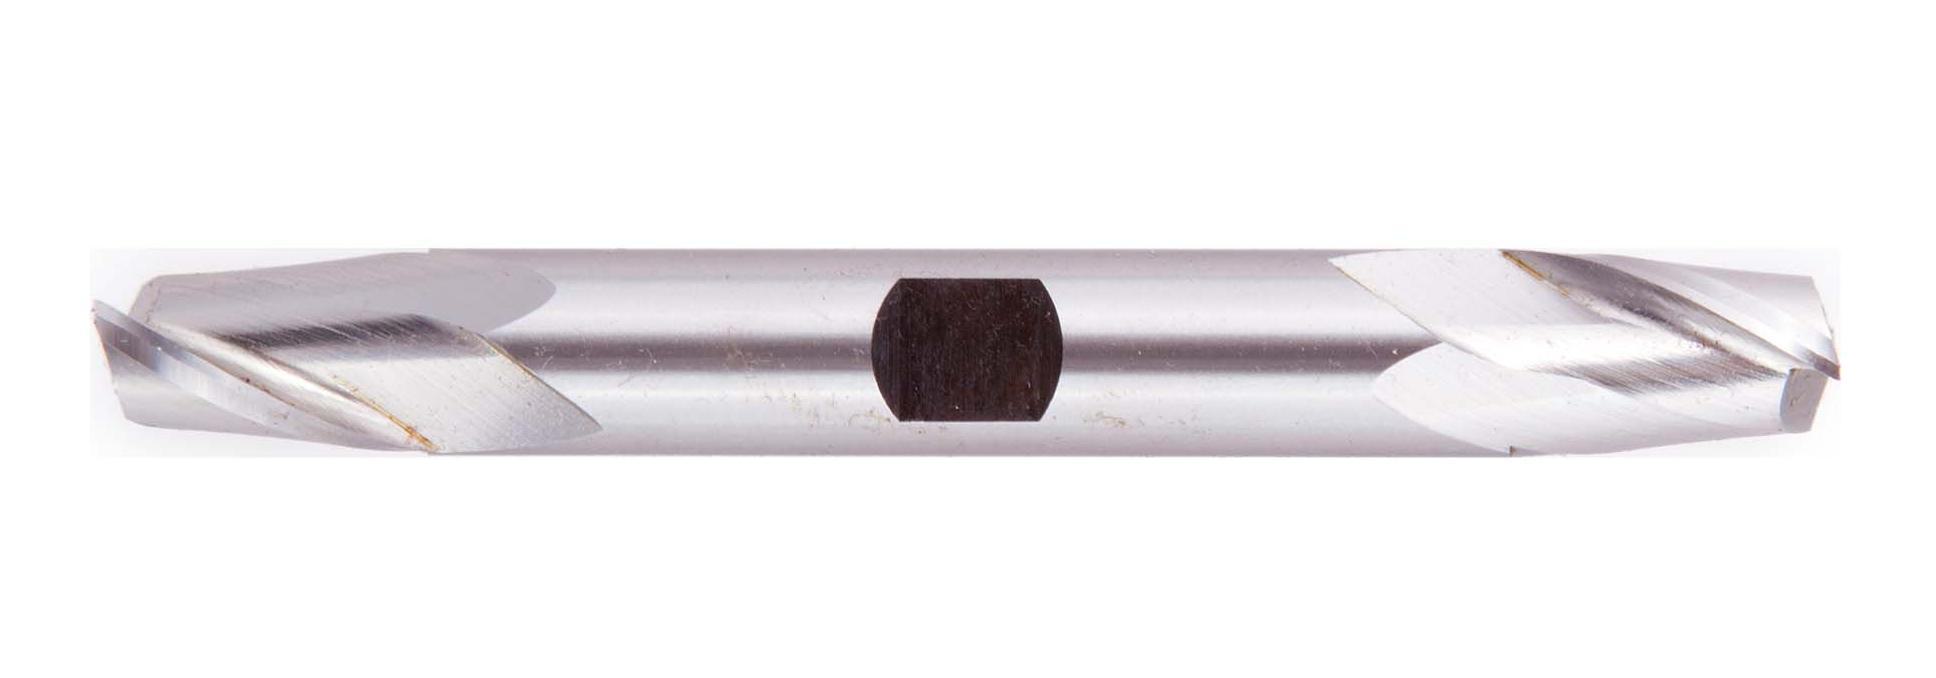 Alcrona コーティング付きエンドミル、ダブルエンド、直径 M4 インチ、長さ 3-1/4 インチ、2 枚刃